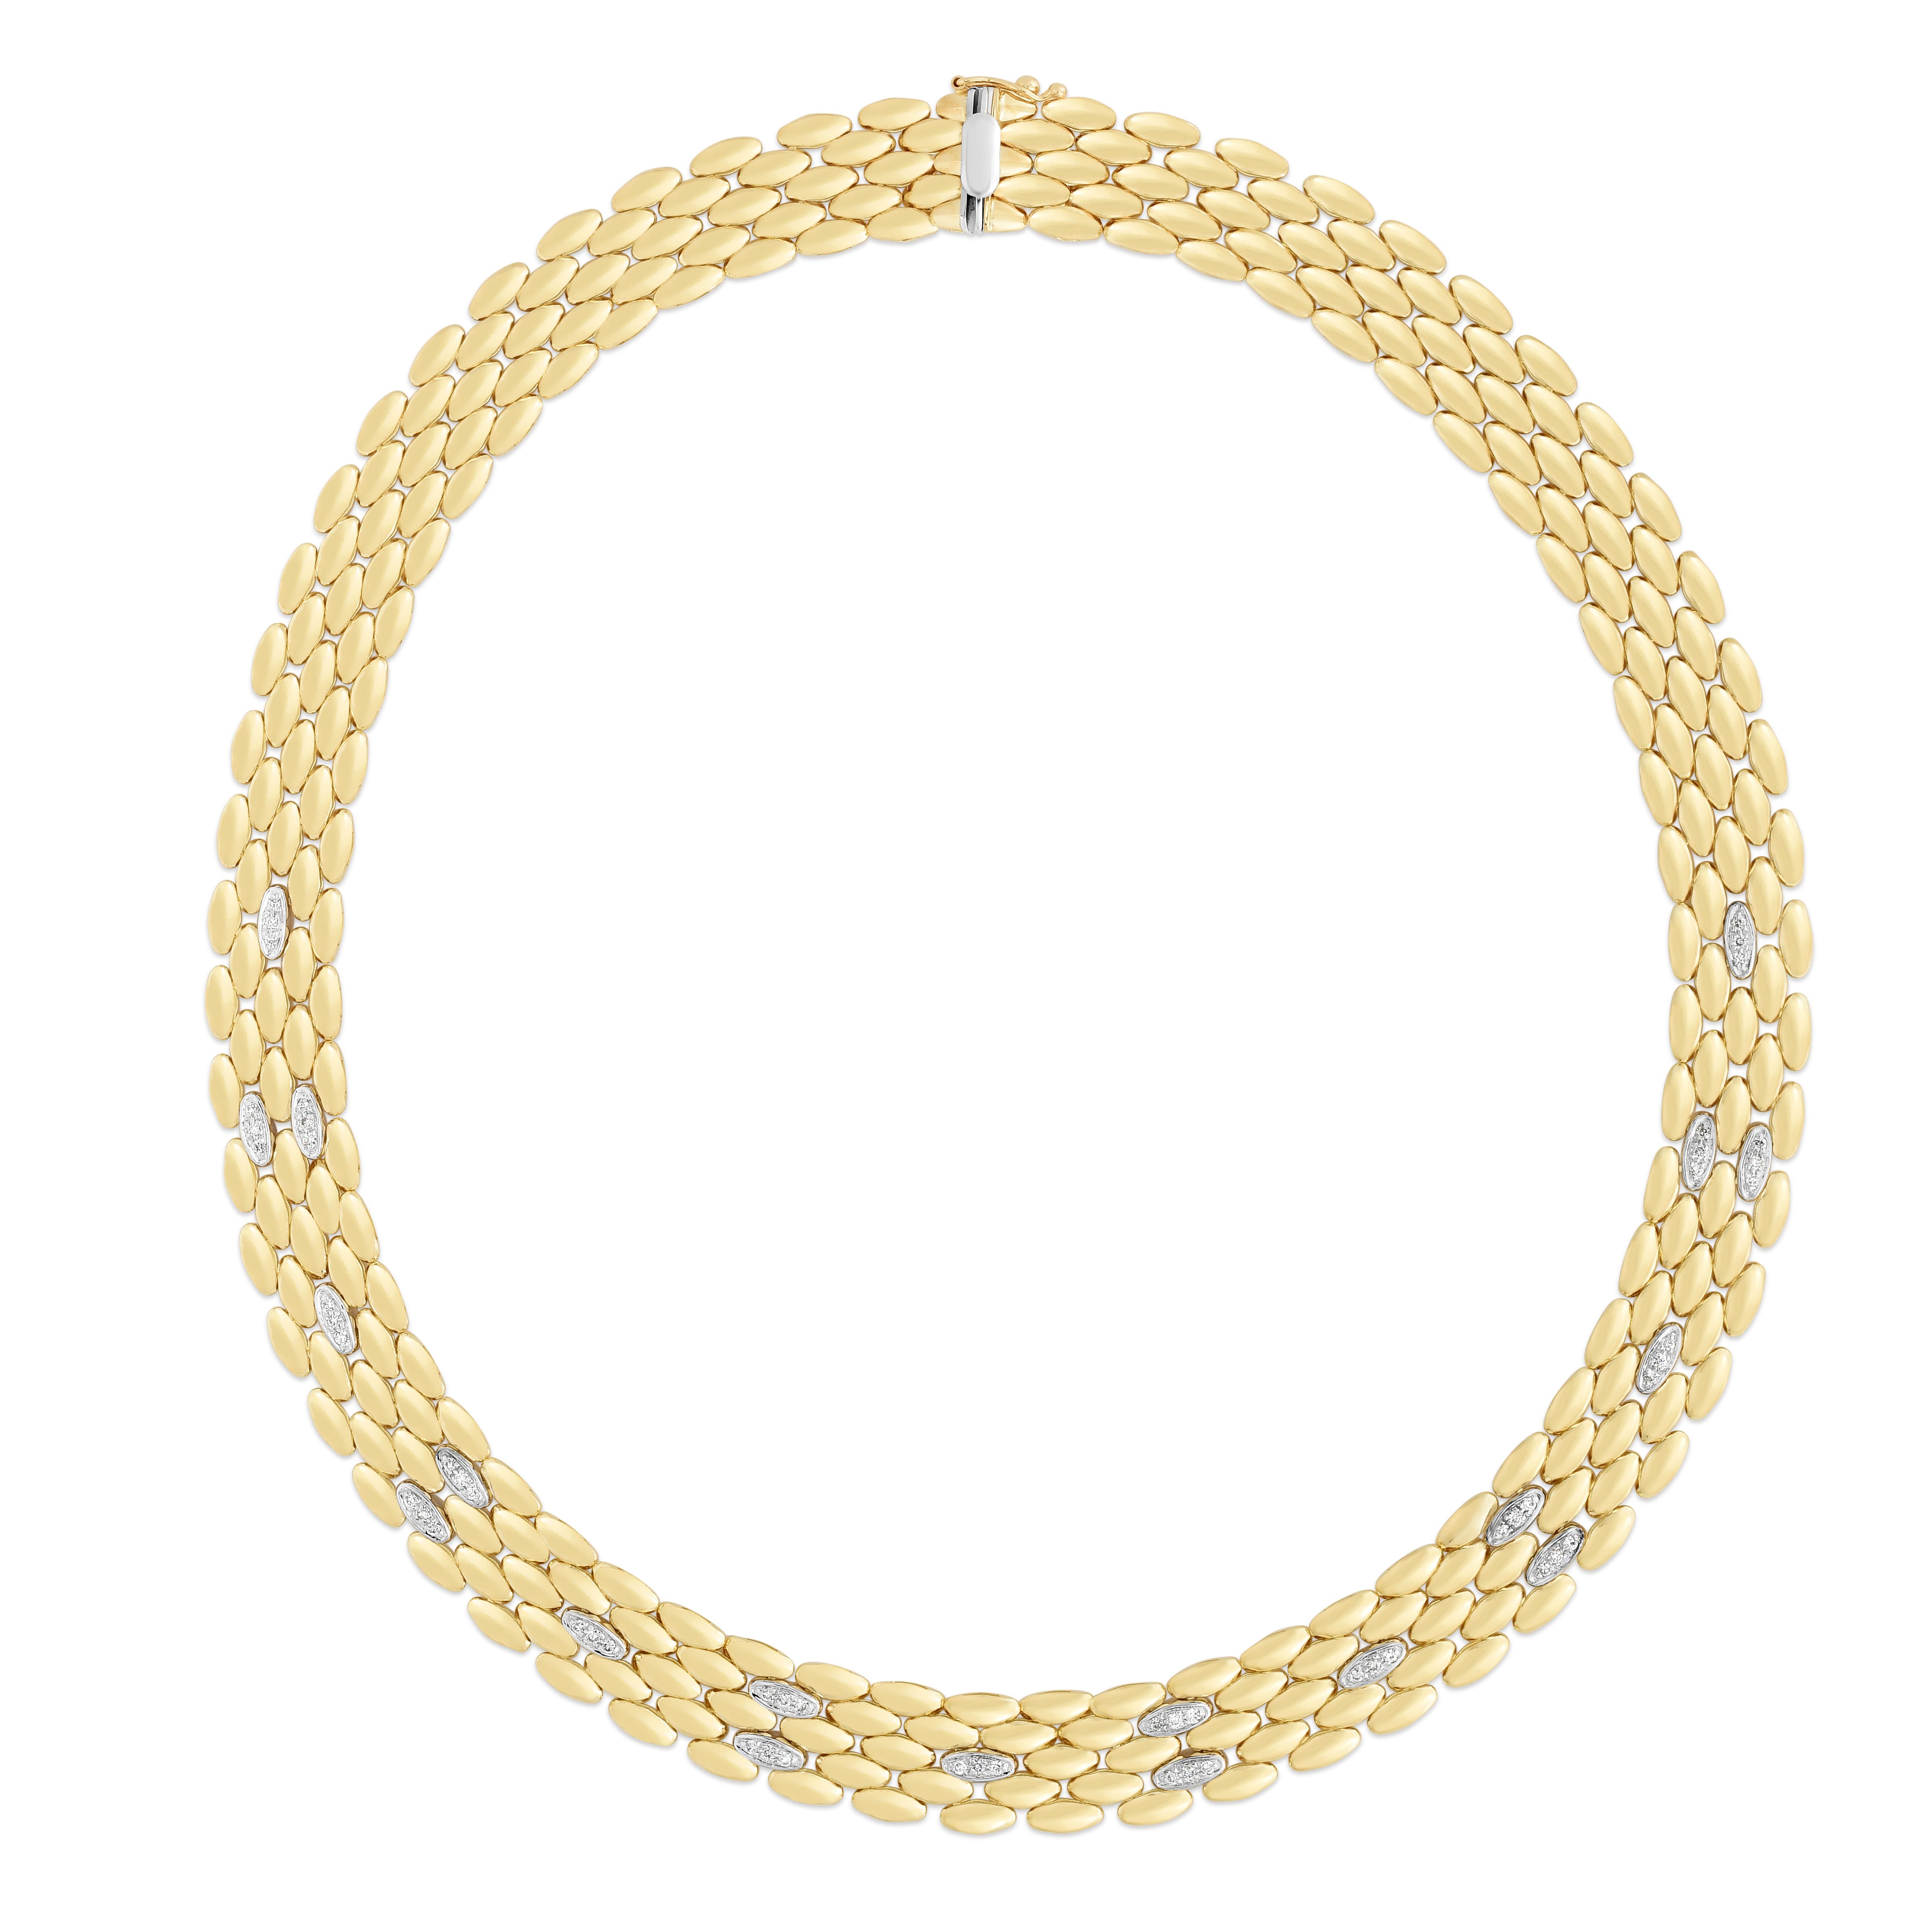 Share 72+ gold panther bracelet super hot - in.duhocakina